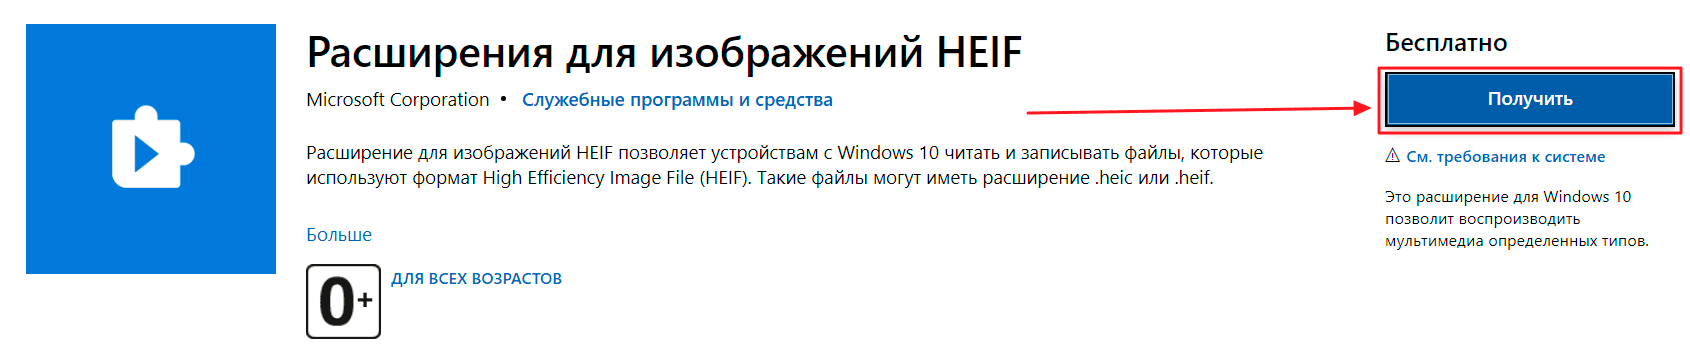 Фото: как и чем открыть HEIC на Windows 10?